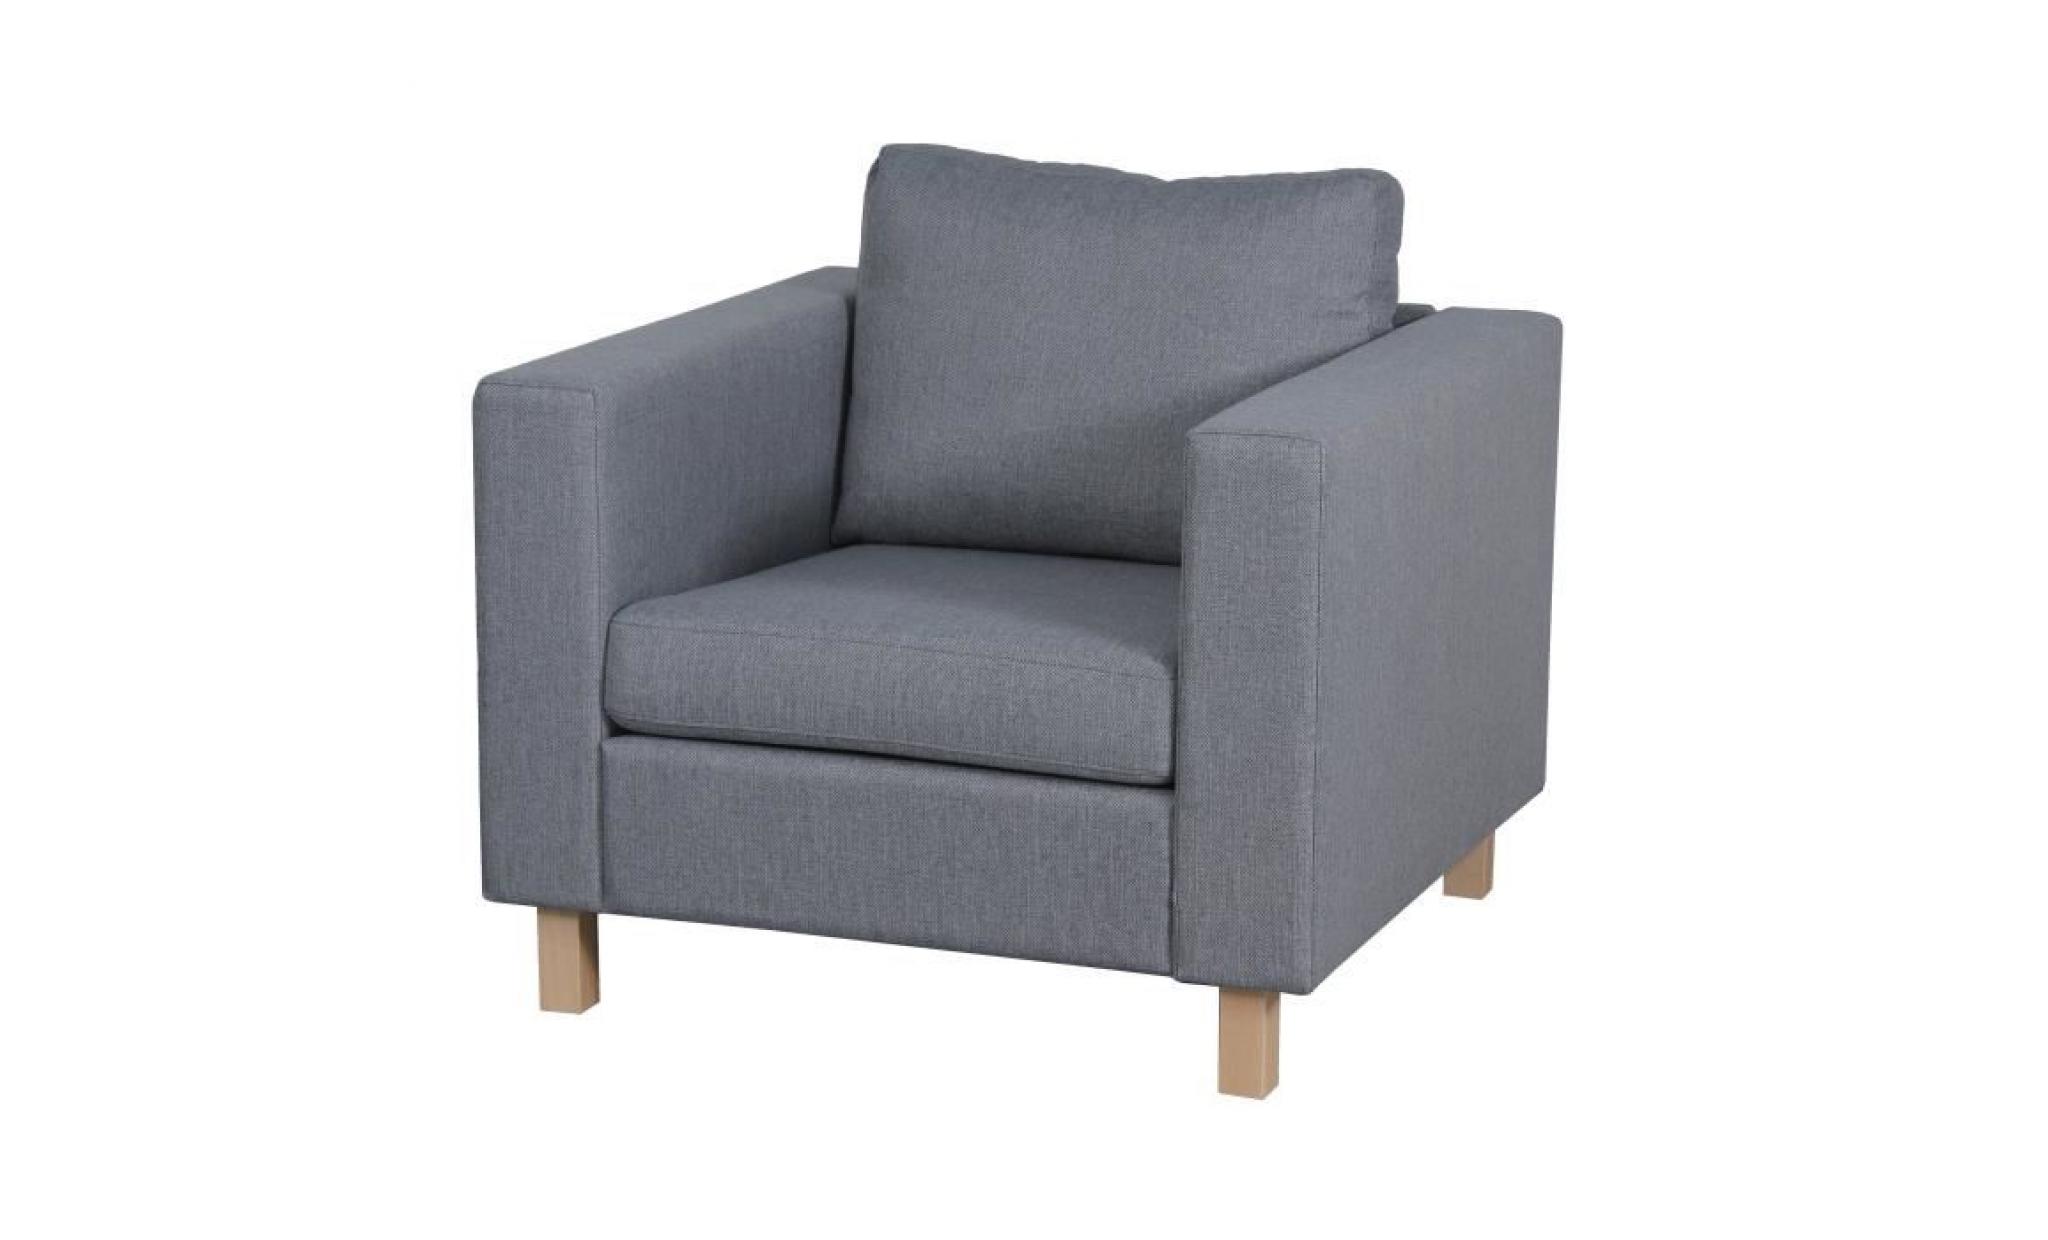 finlandek fauteuil sven   tissu gris clair   scandinave   l 92 x p 92 cm pas cher